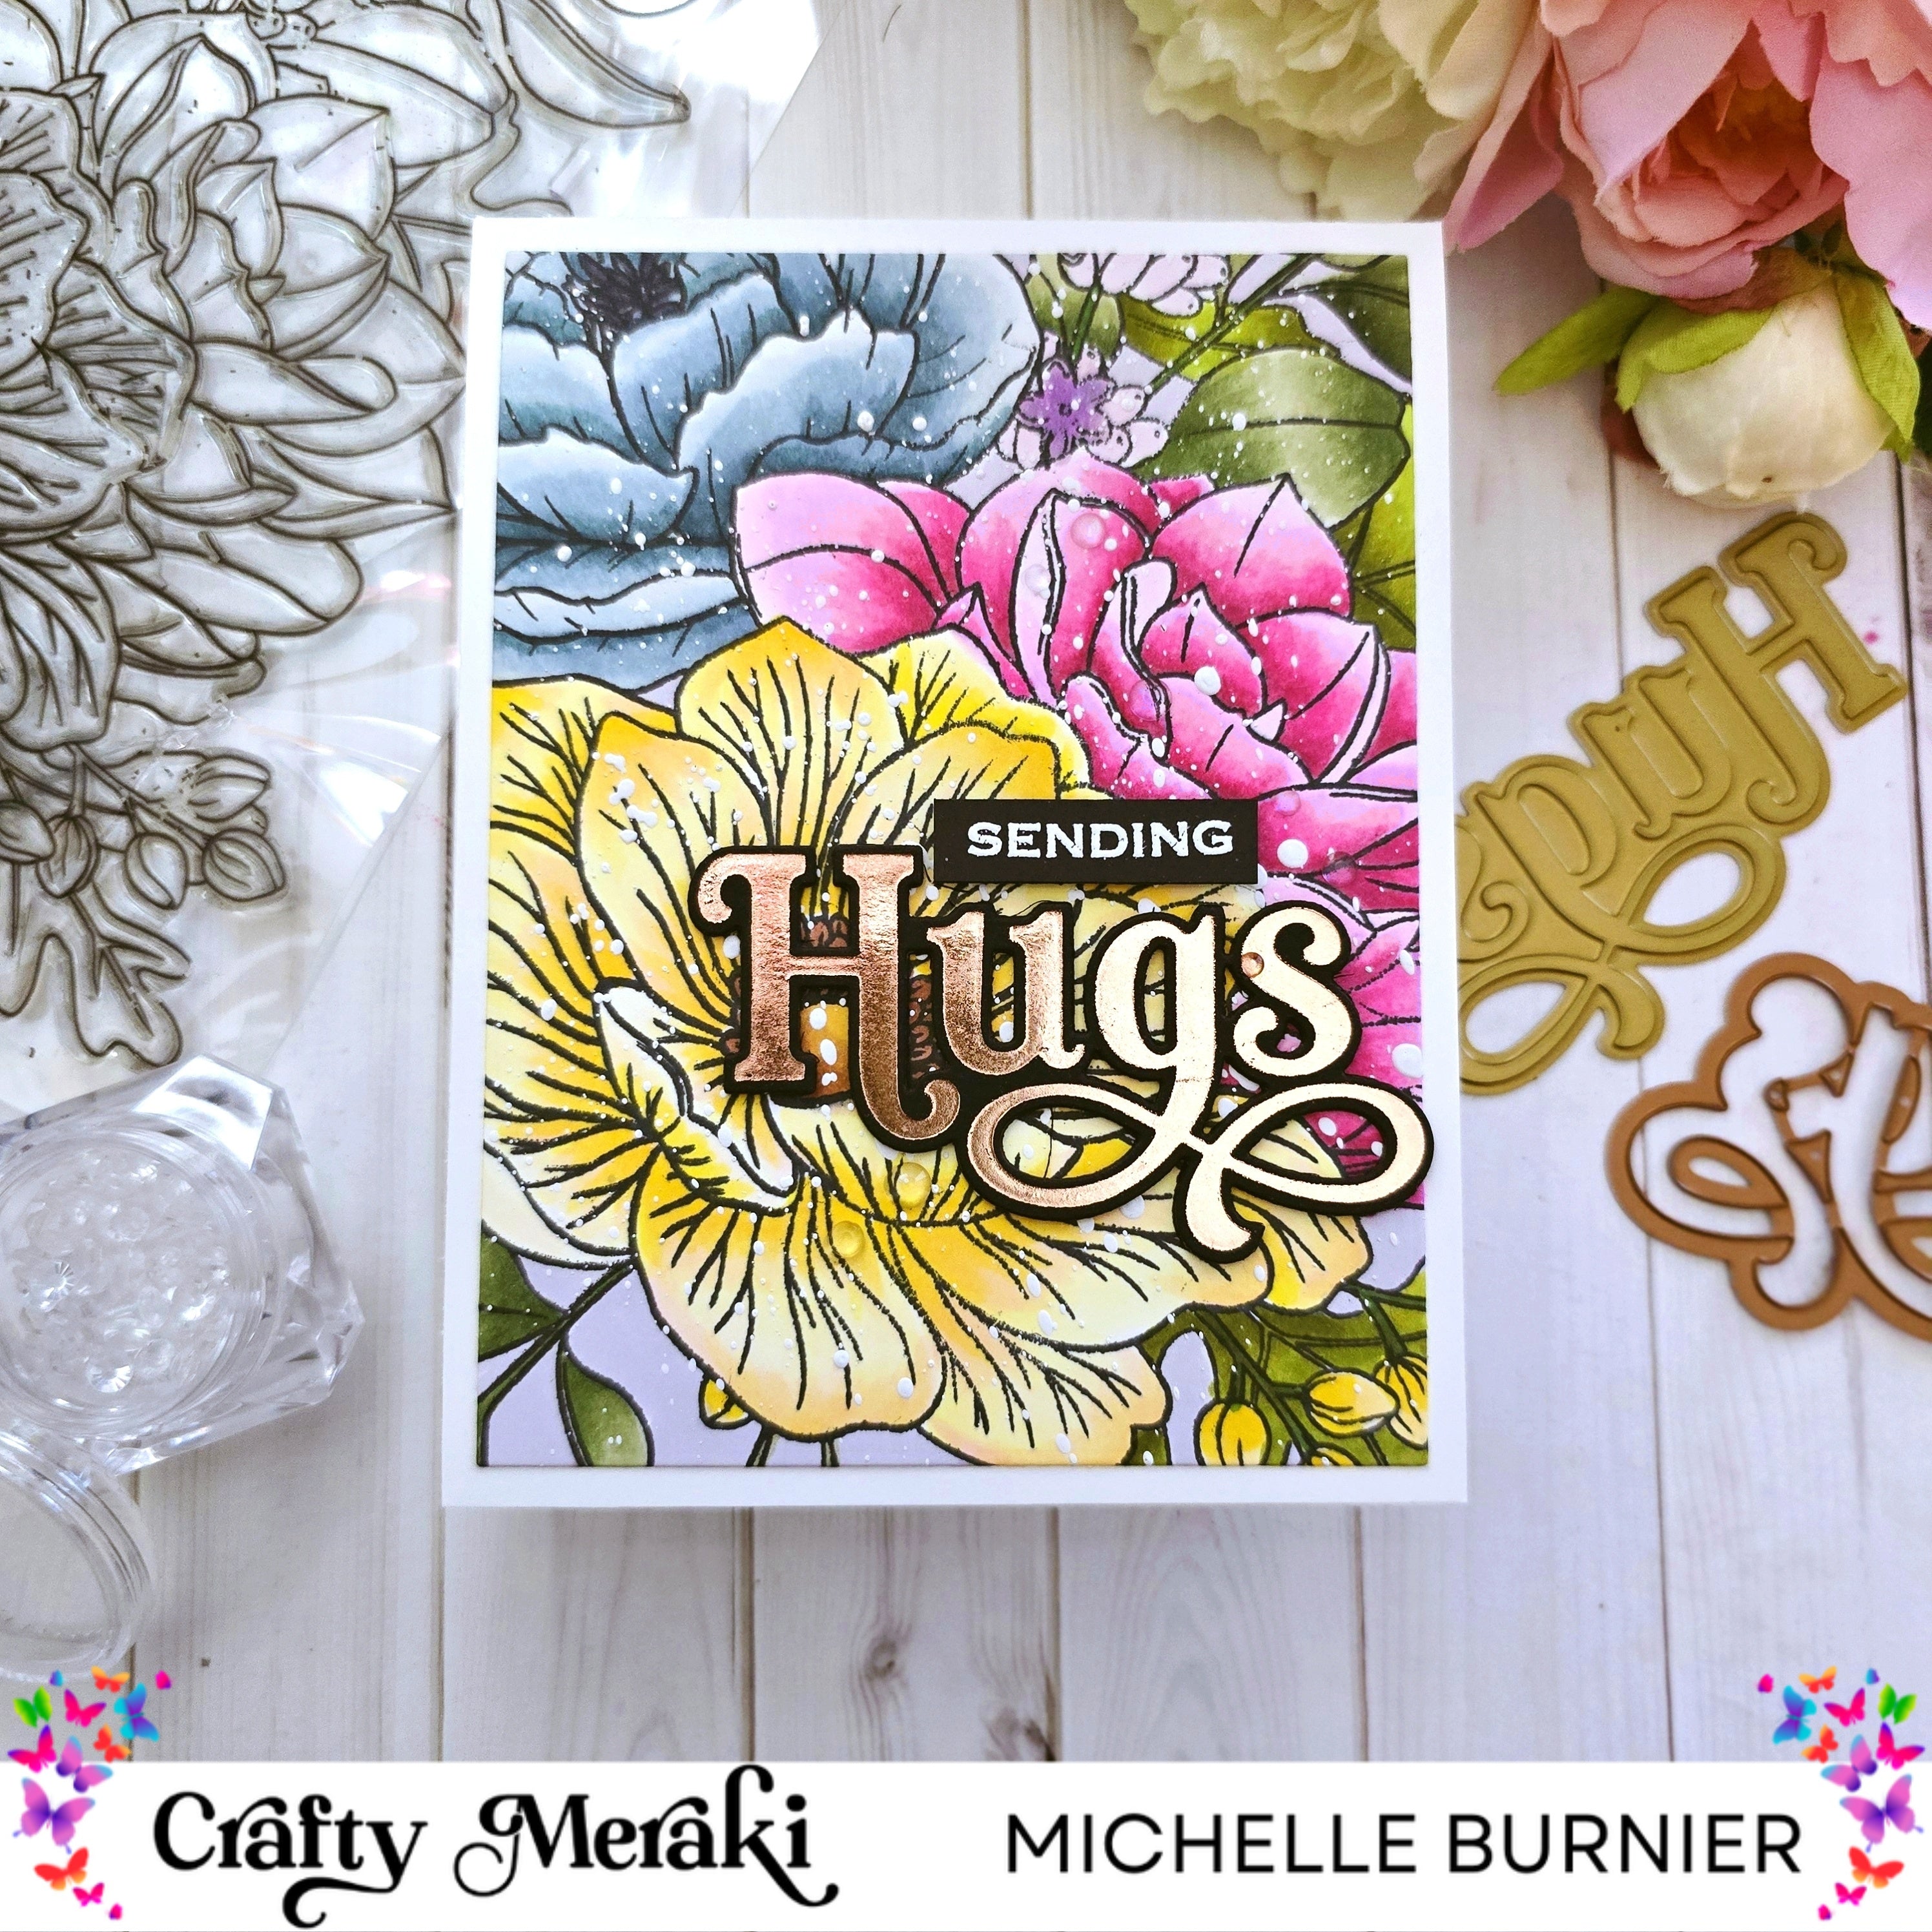 Sending Big Floral Hugs